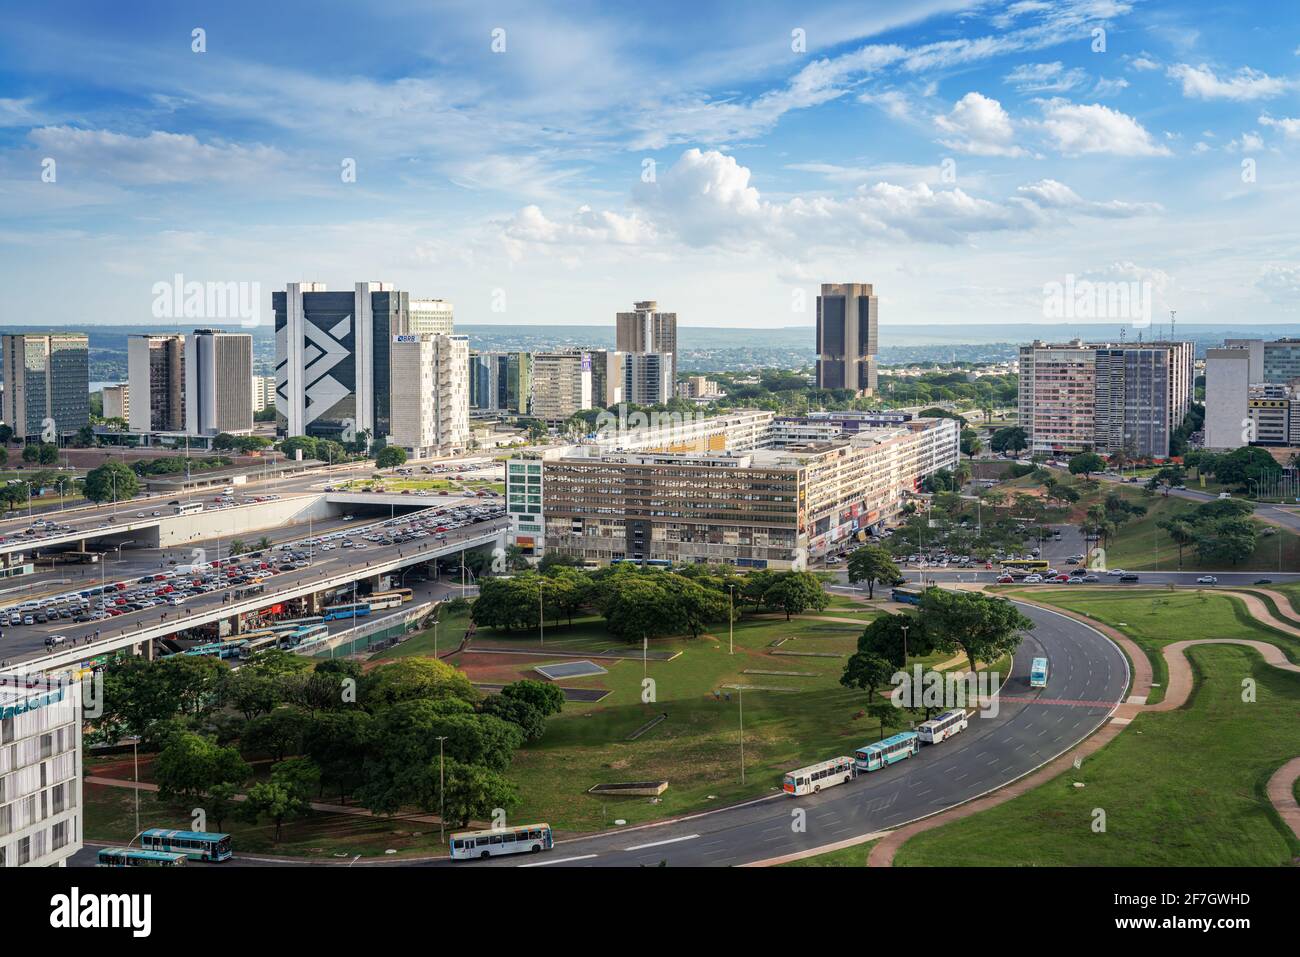 Vista aerea del settore Brasilia e South Banking - Brasilia, Distrito Federal, Brasile Foto Stock